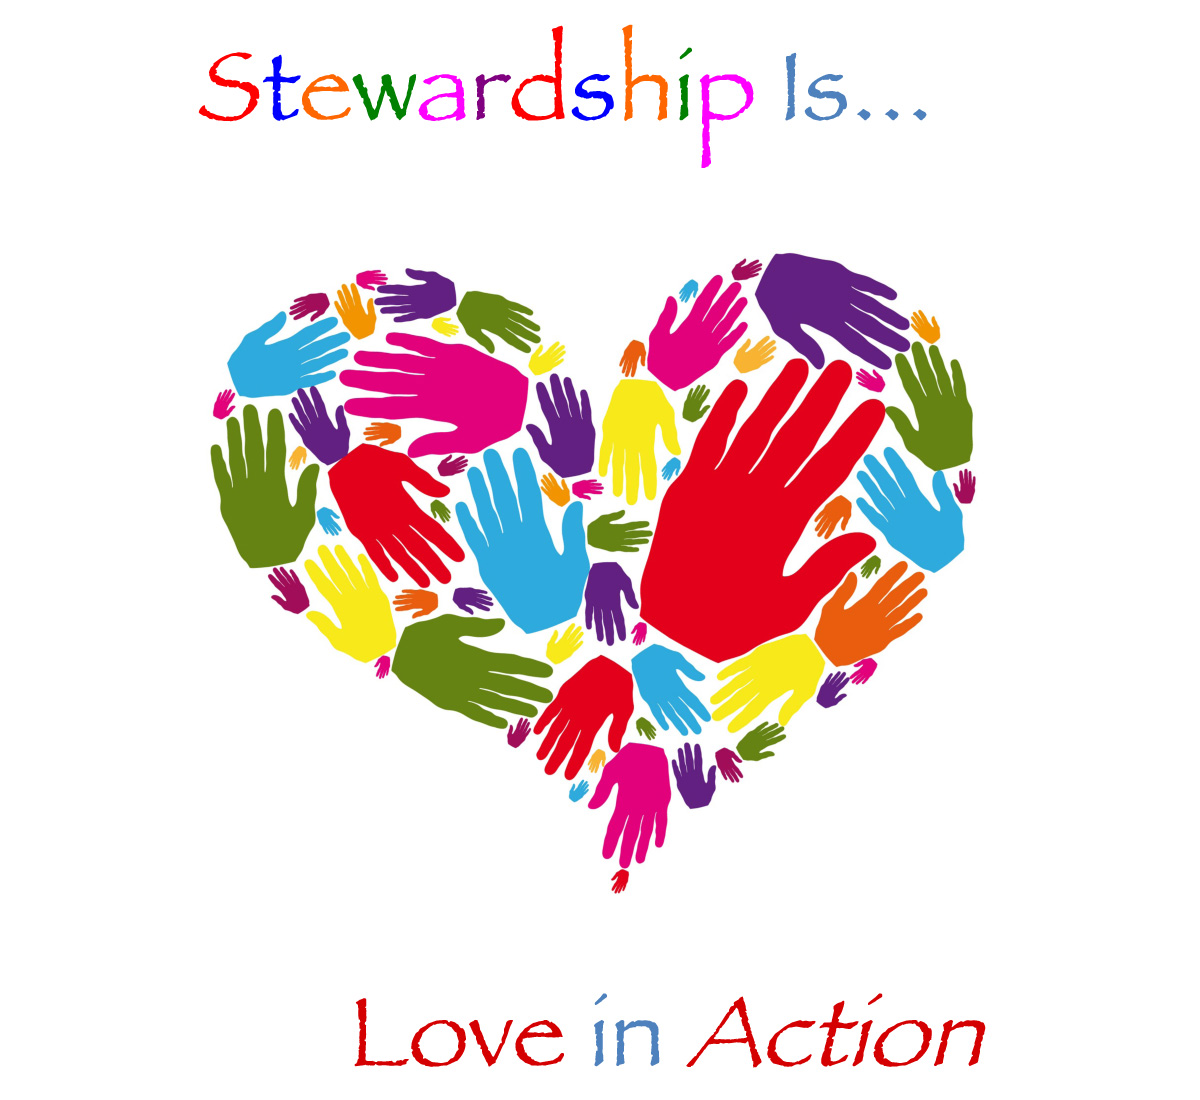 stewardship image